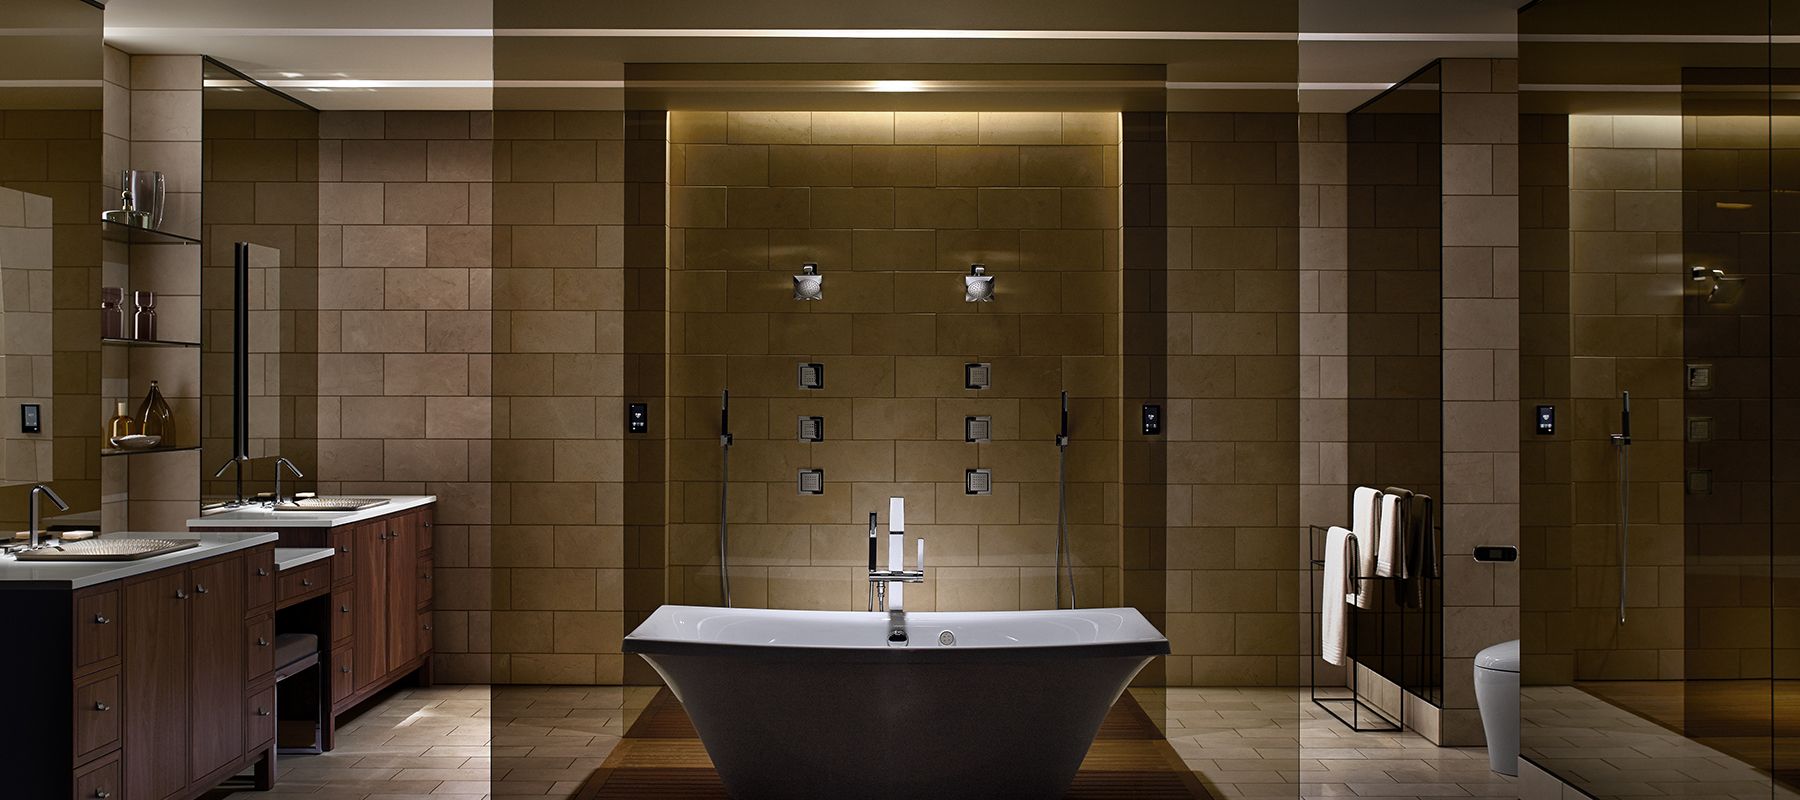 Scientific Vastu Bathroom Architecture Ideas